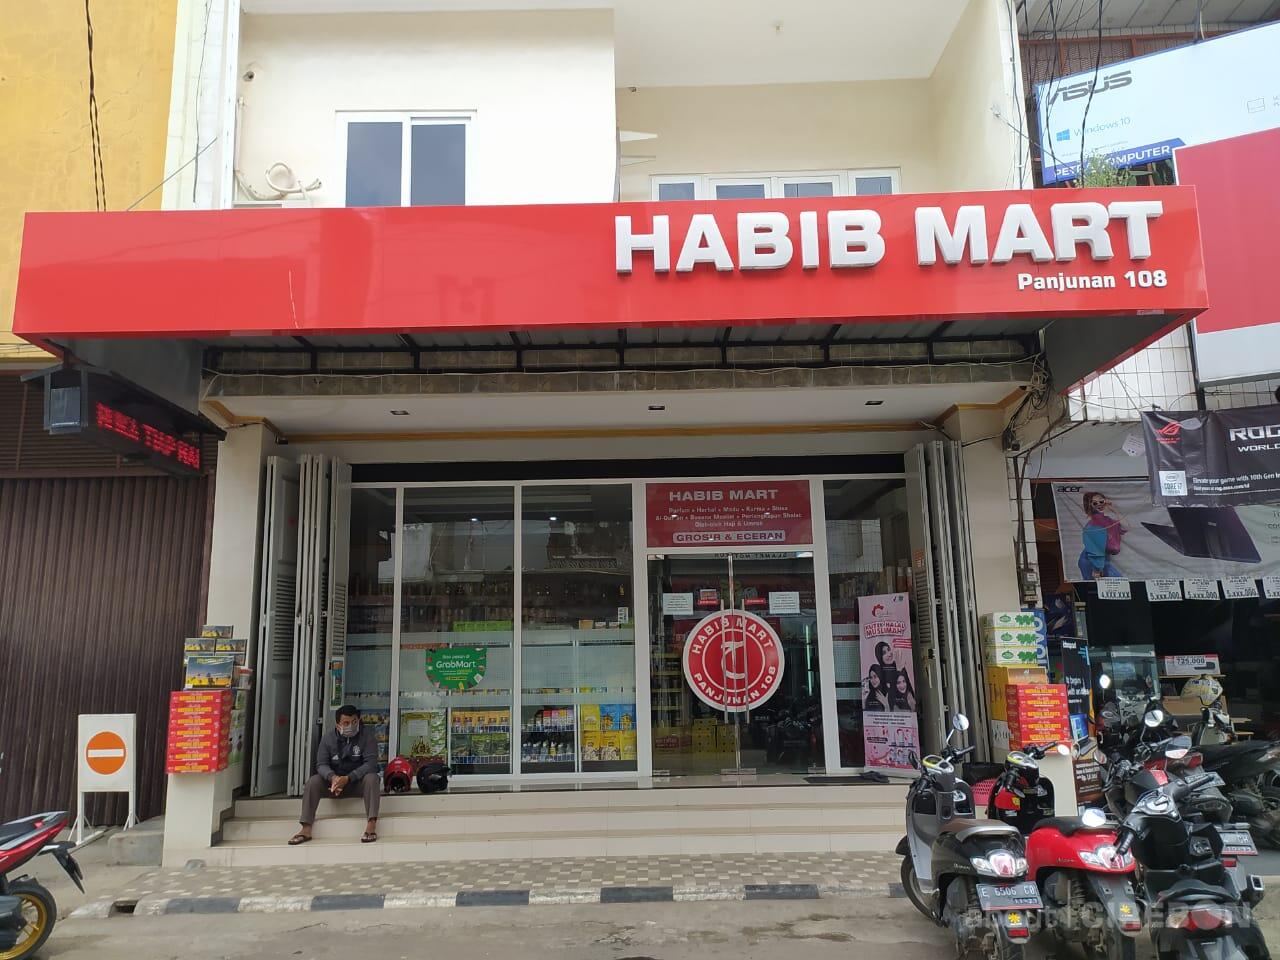 Habib Mart Group Pusat Perlengkapan Muslim Terlengkap Di Cirebon